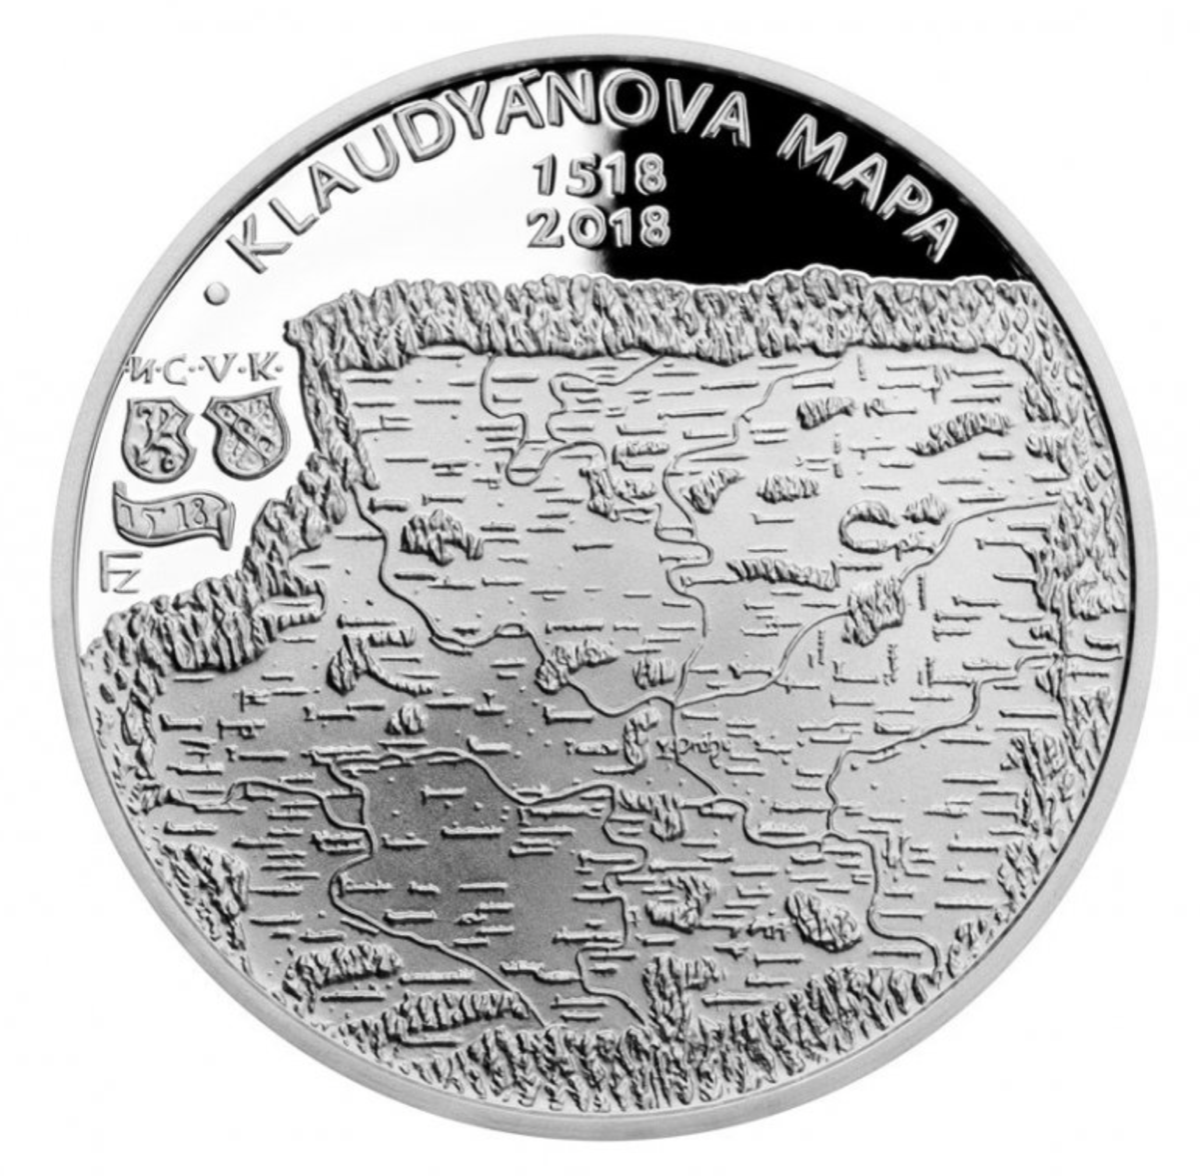 Stříbrná mince Vydání Klaudyánovy mapy 200 Kč proof 2018